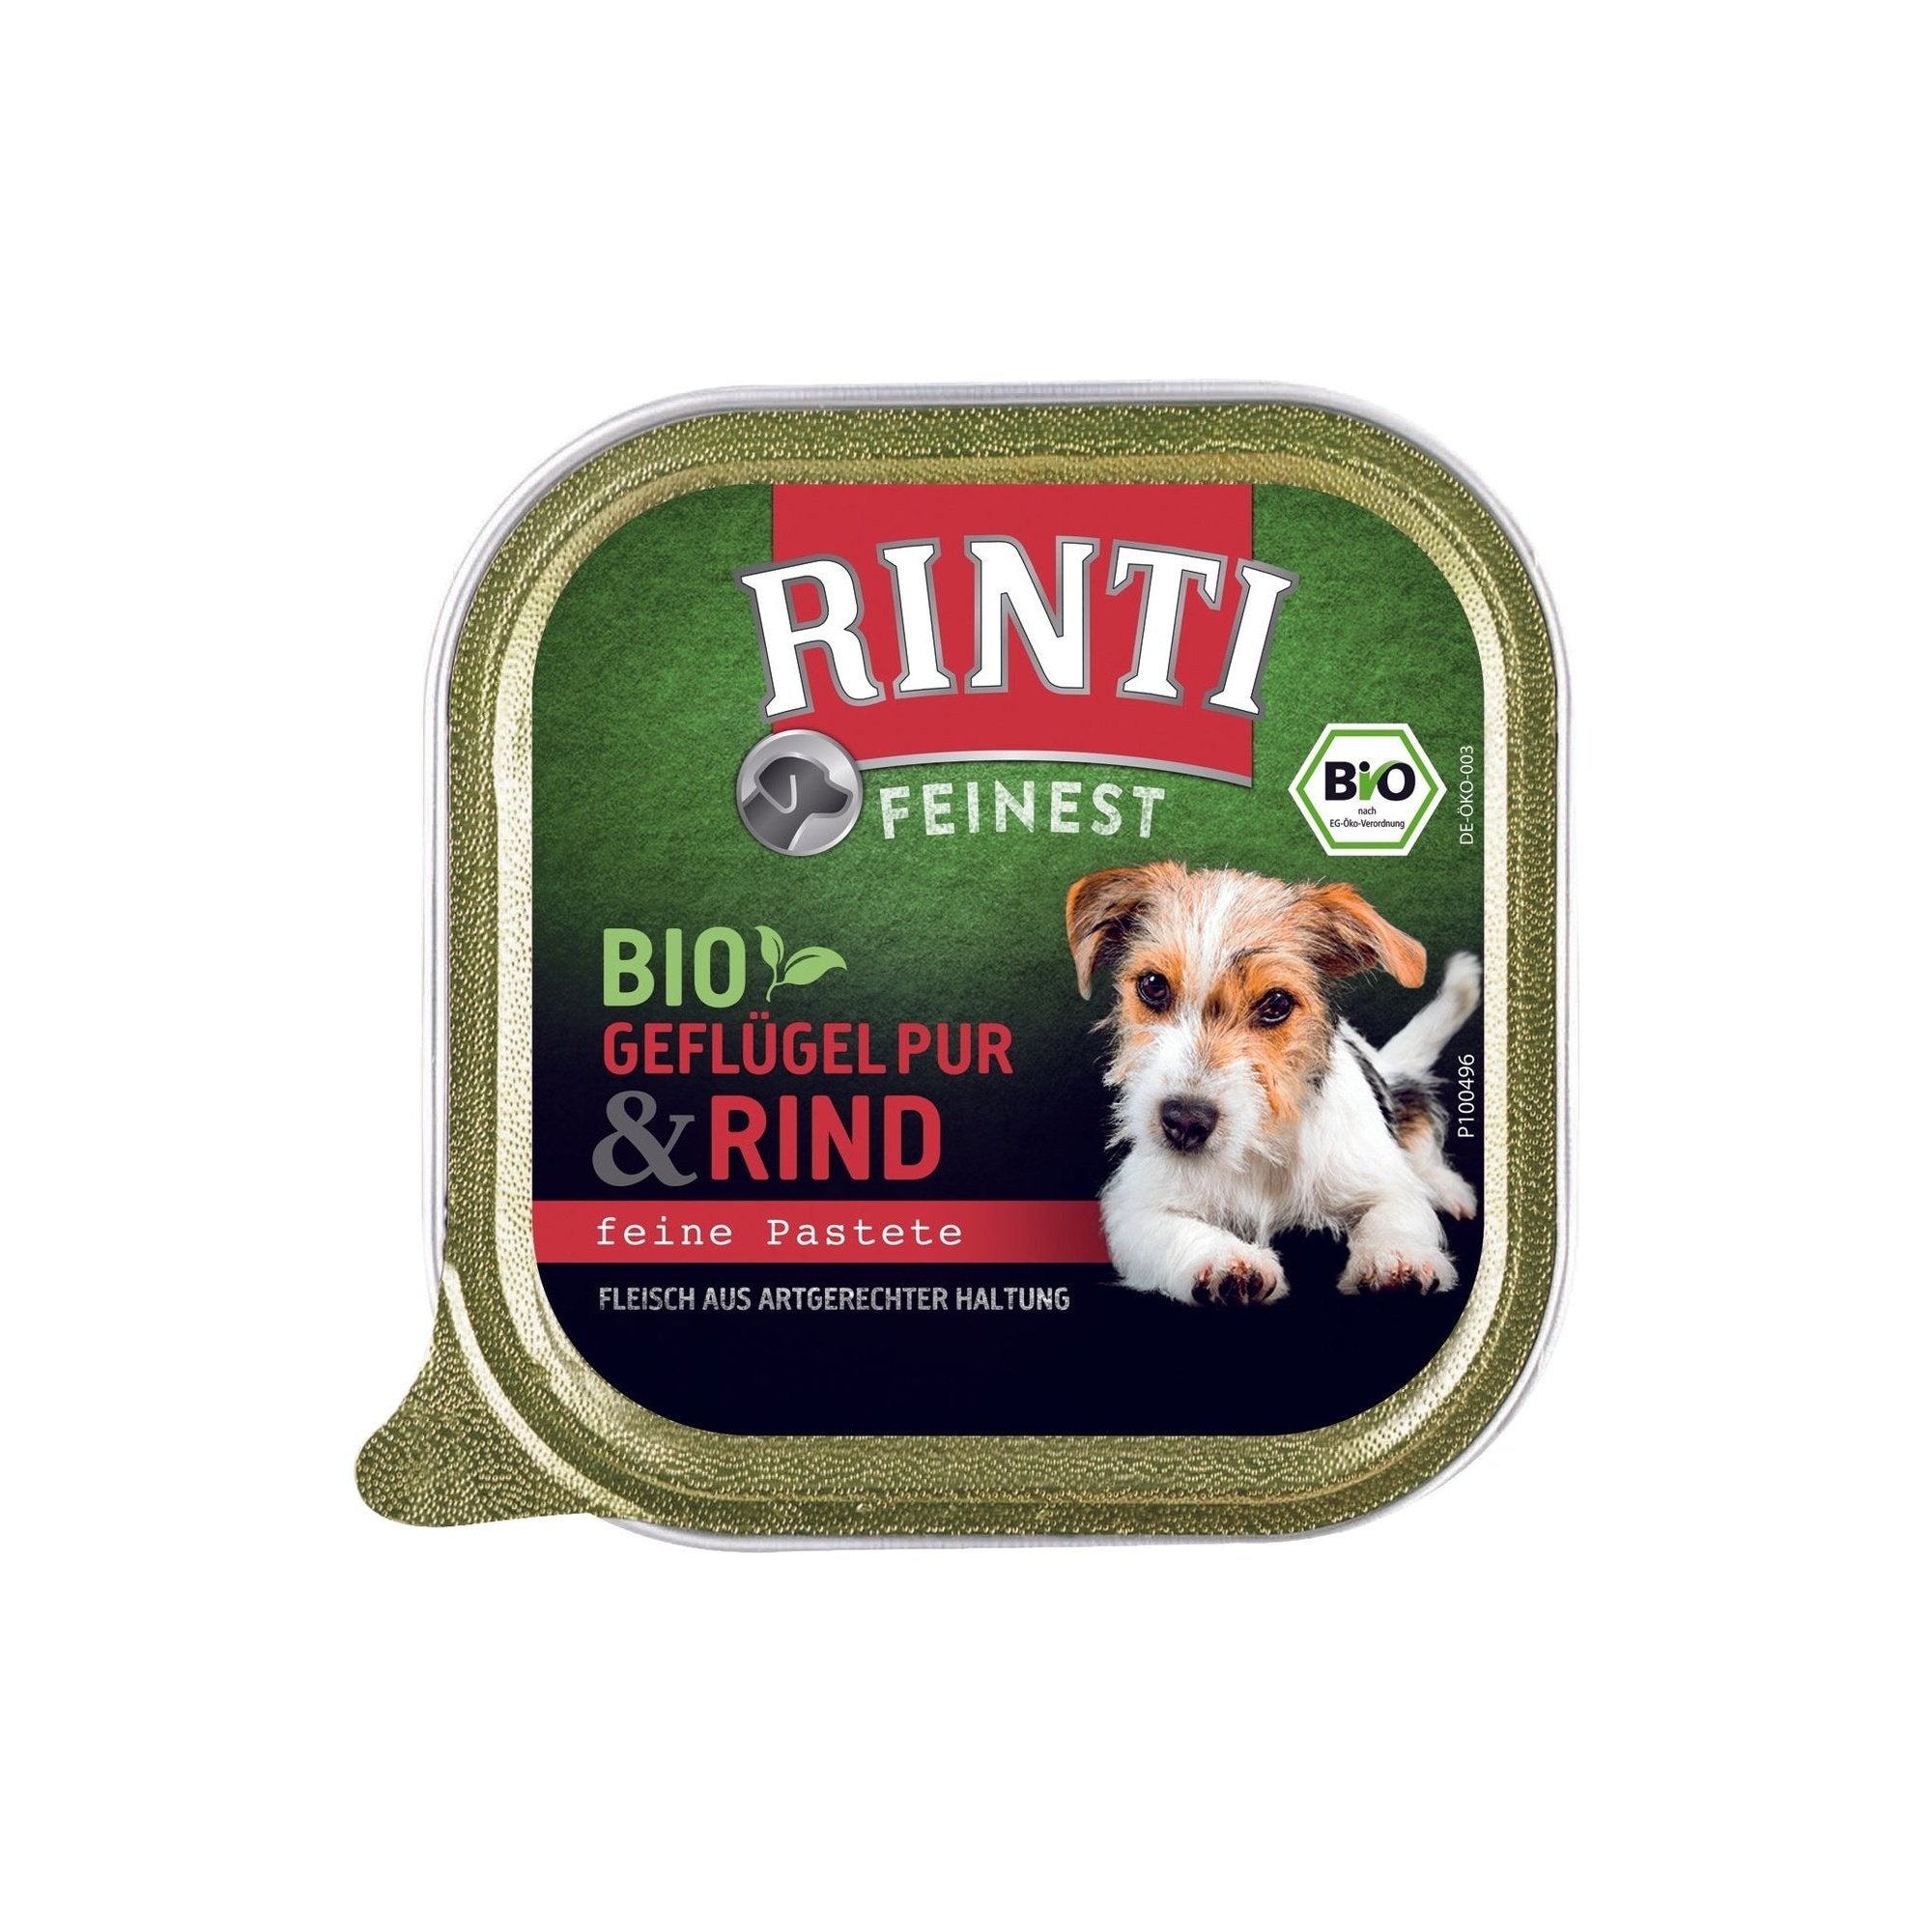 Artikel mit dem Namen Rinti Bio Rind im Shop von zoo.de , dem Onlineshop für nachhaltiges Hundefutter und Katzenfutter.